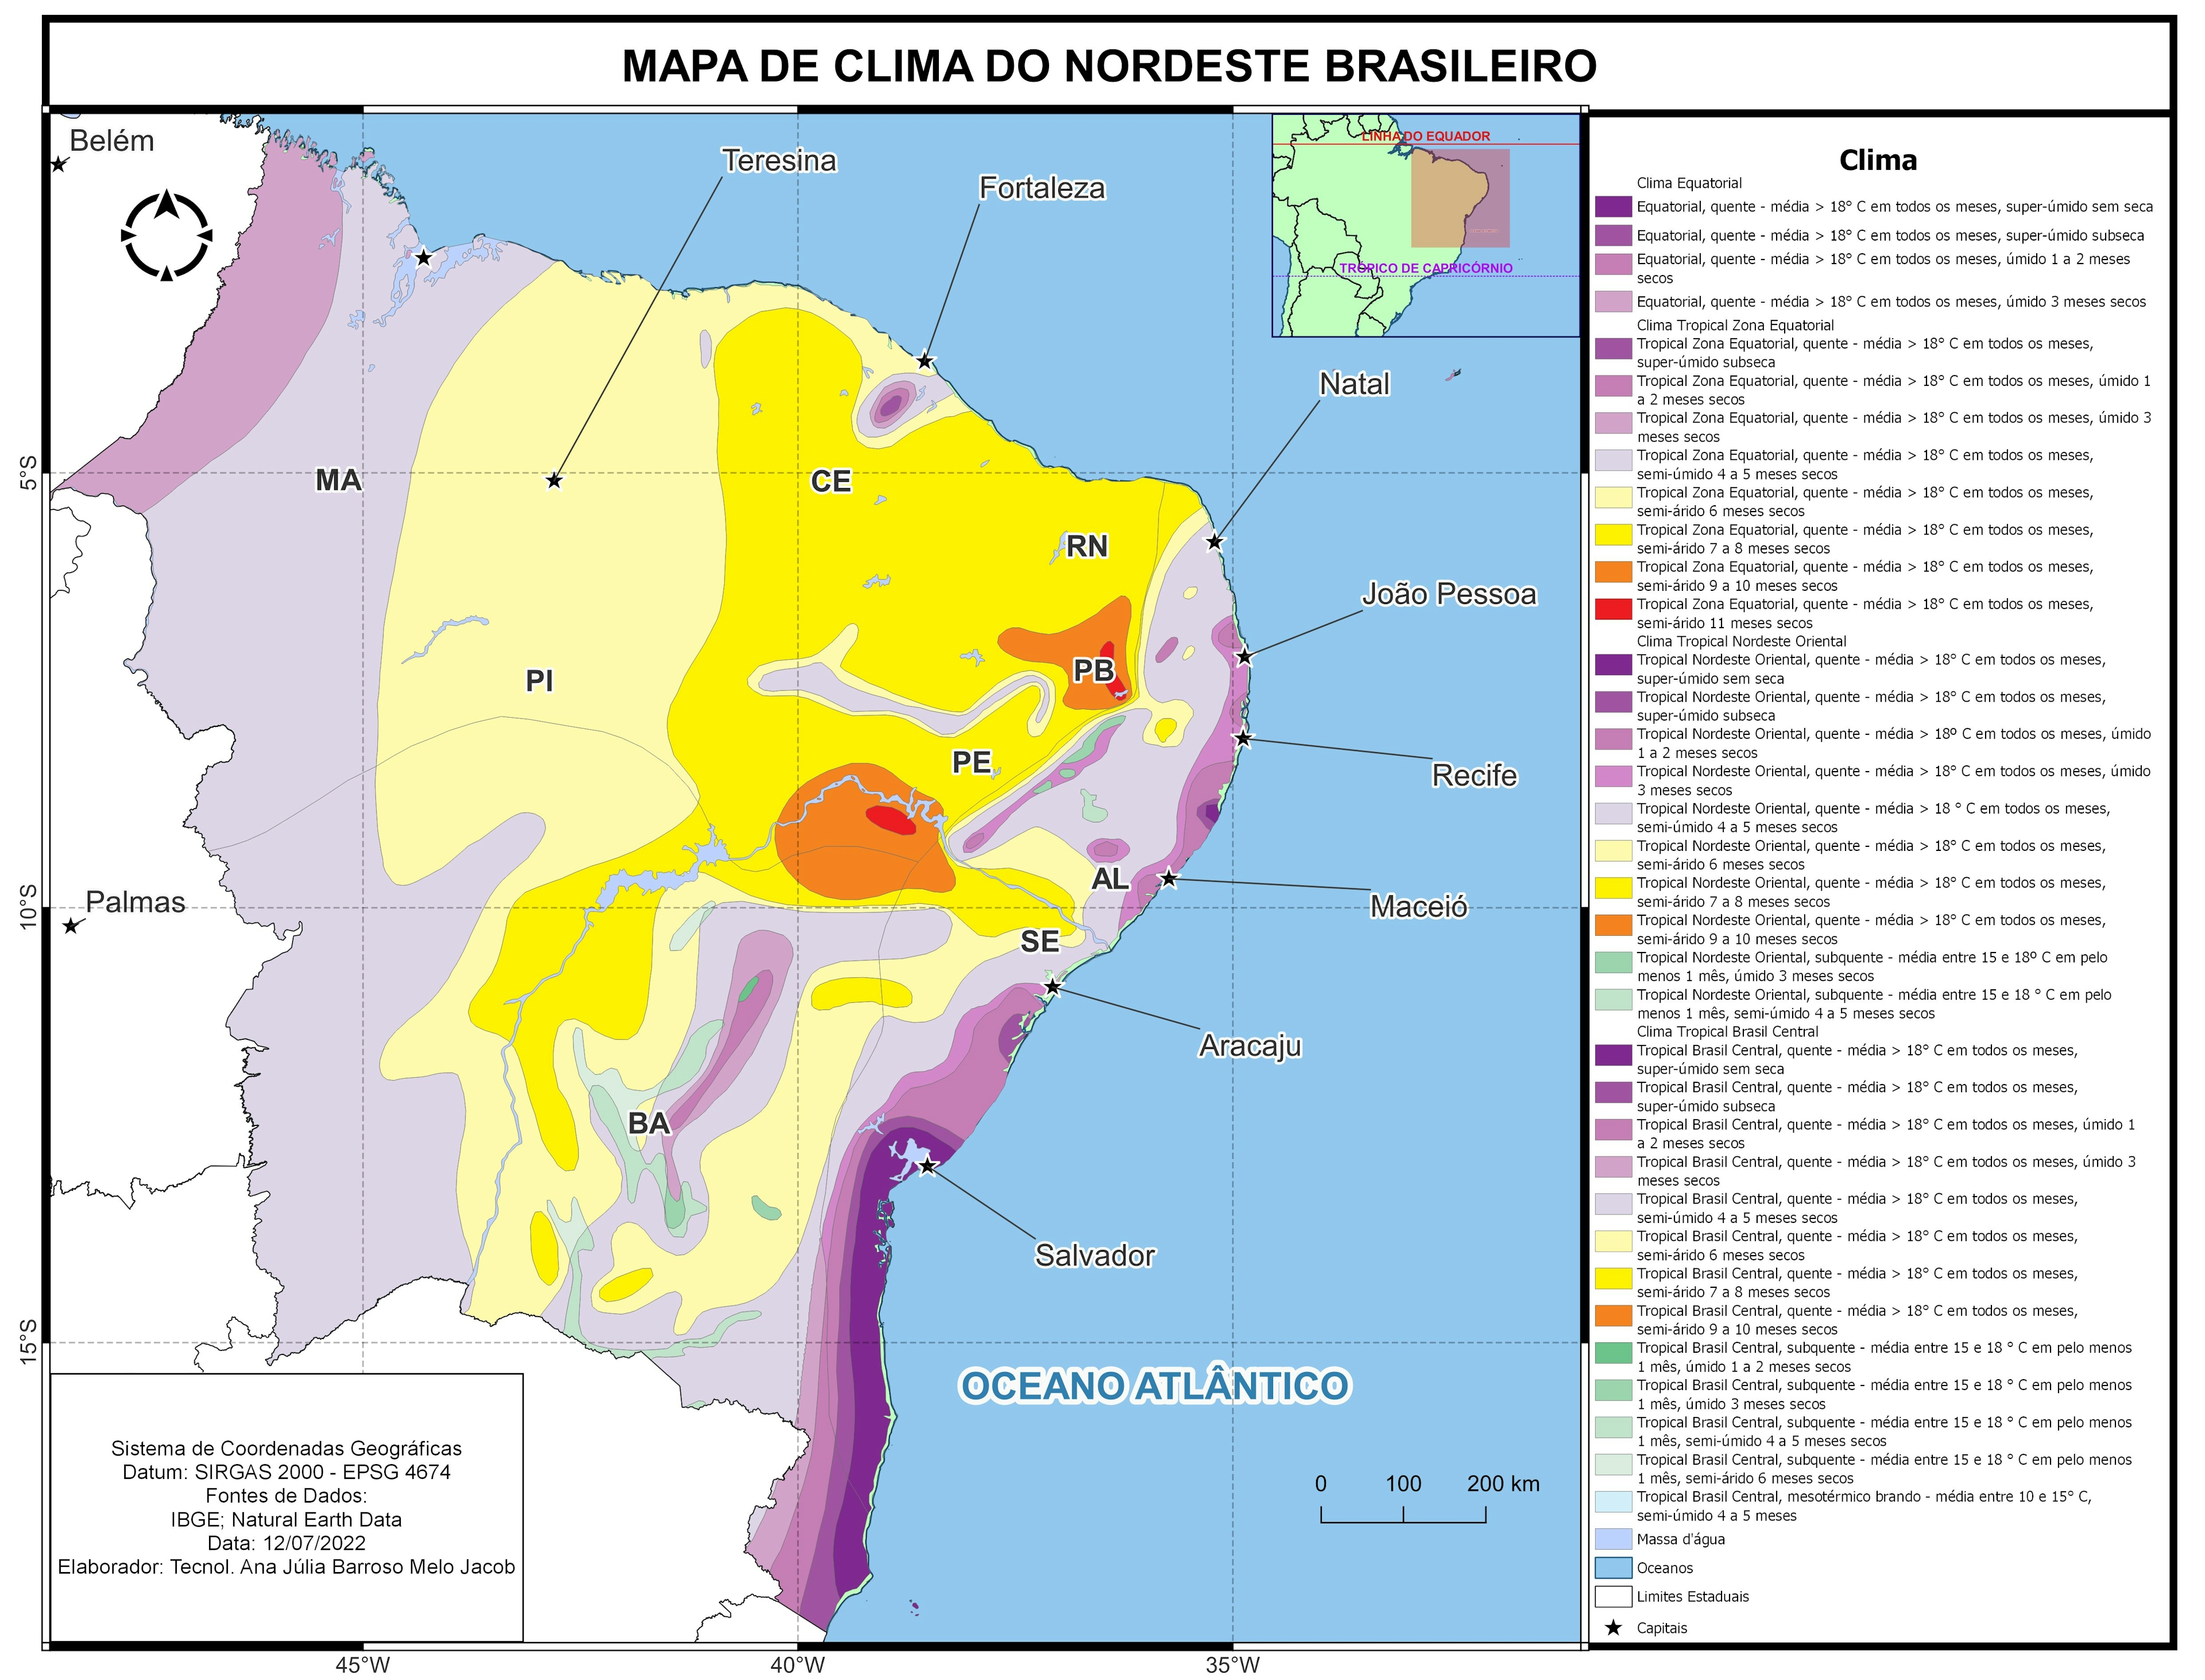 MAPA DE CLIMA DA REGIÃO NORDESTE